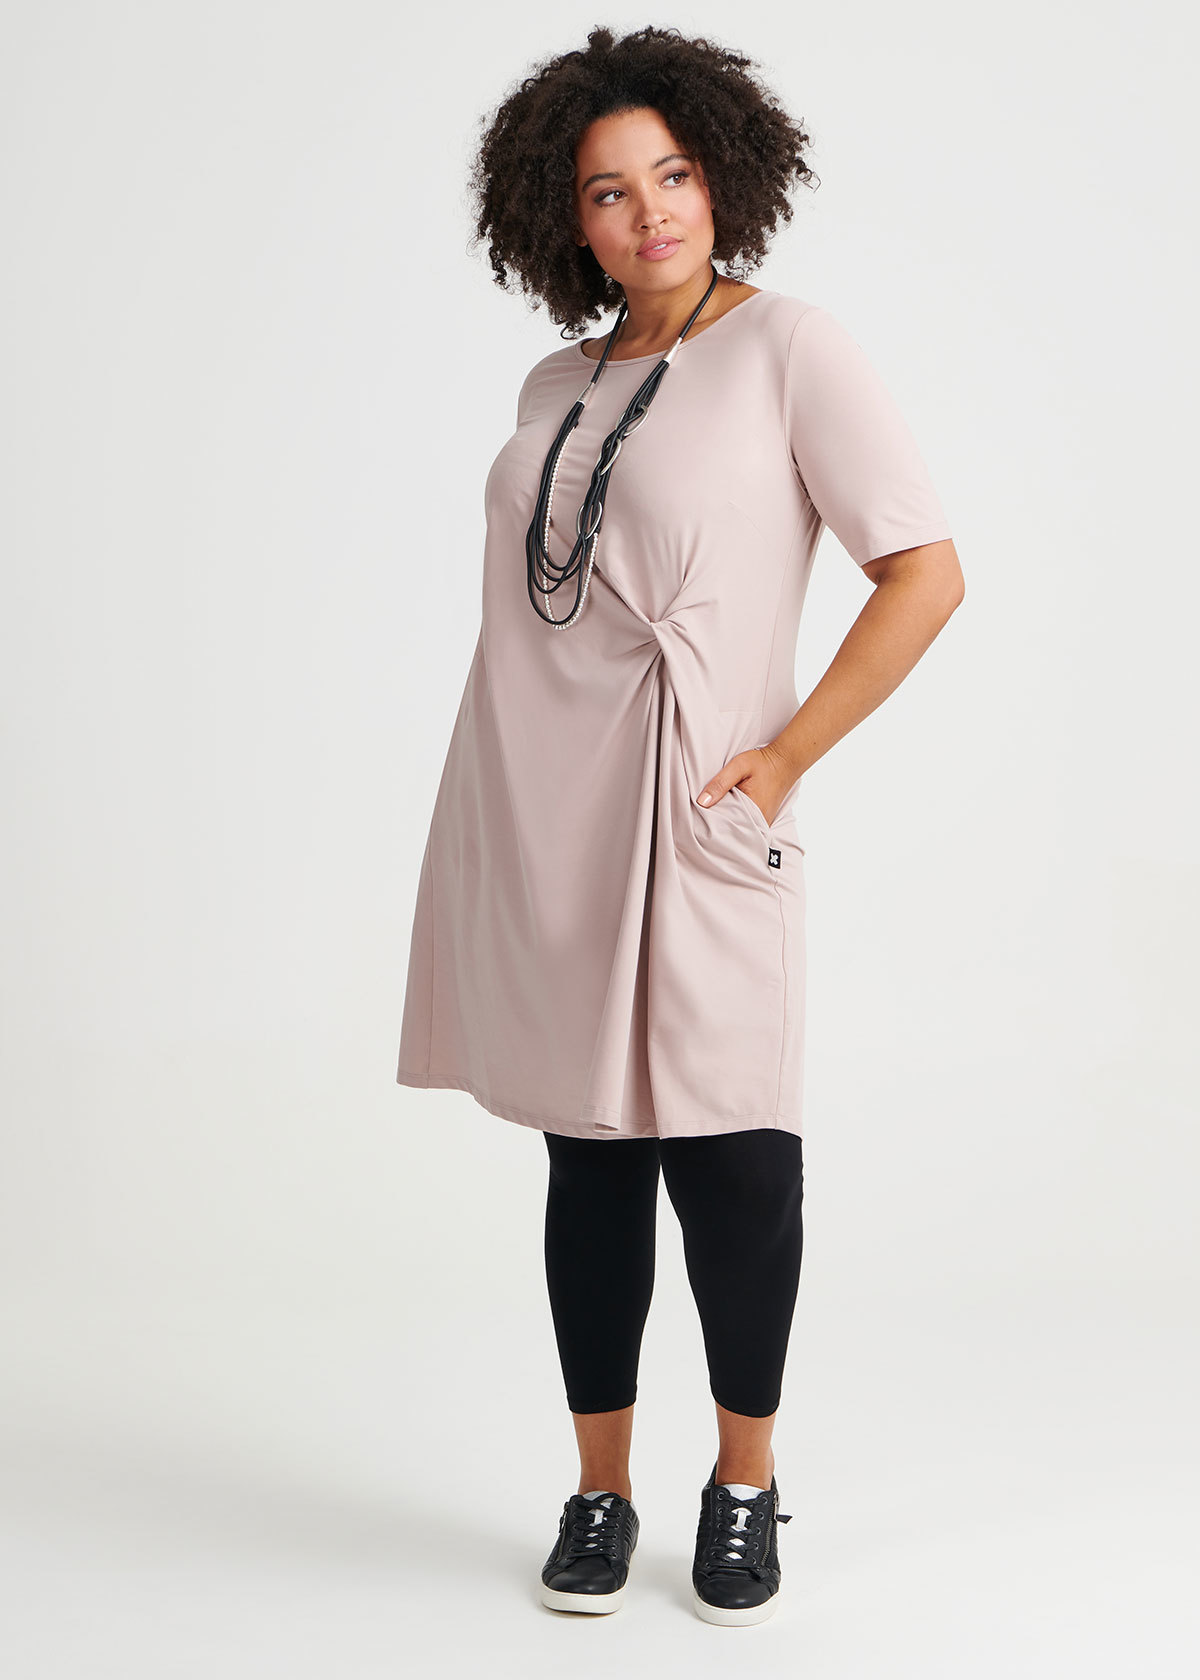 Cotton Twist Dress in Pink, Sizes 12-30 | Taking Shape NZ